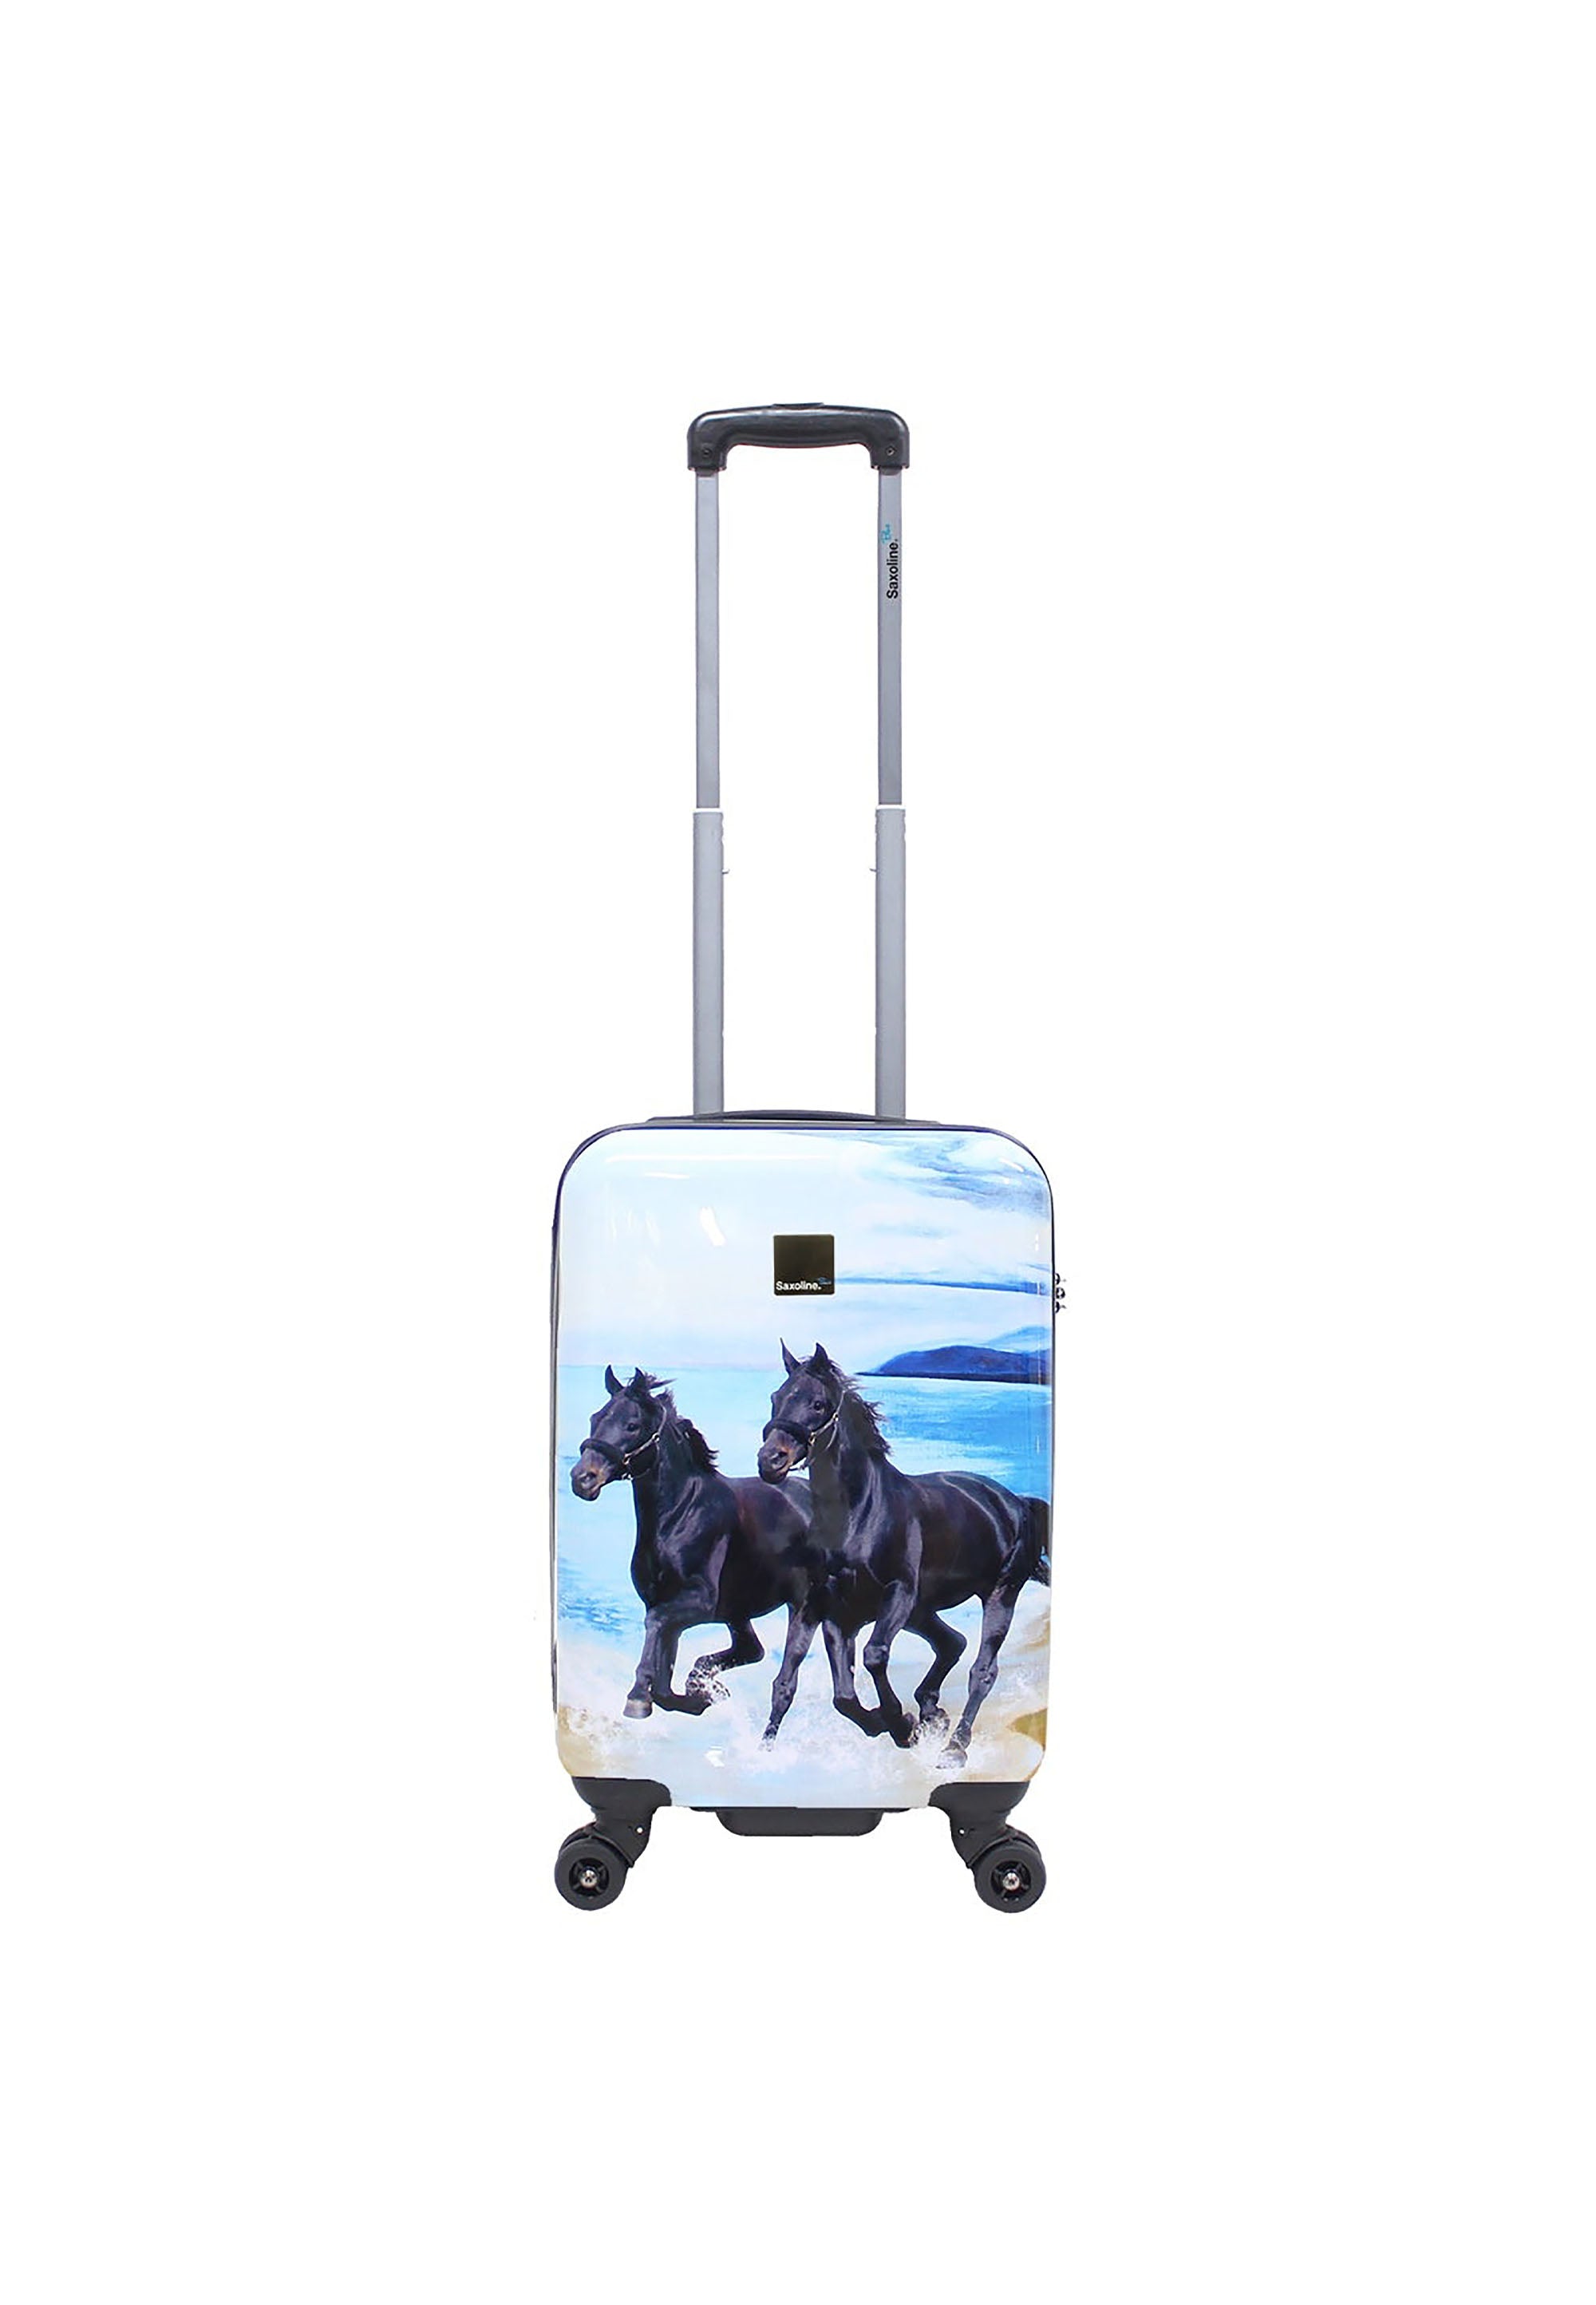 Handgepäck Koffer mit Pferden der Reisekoffer in Gr. S von Saxoline